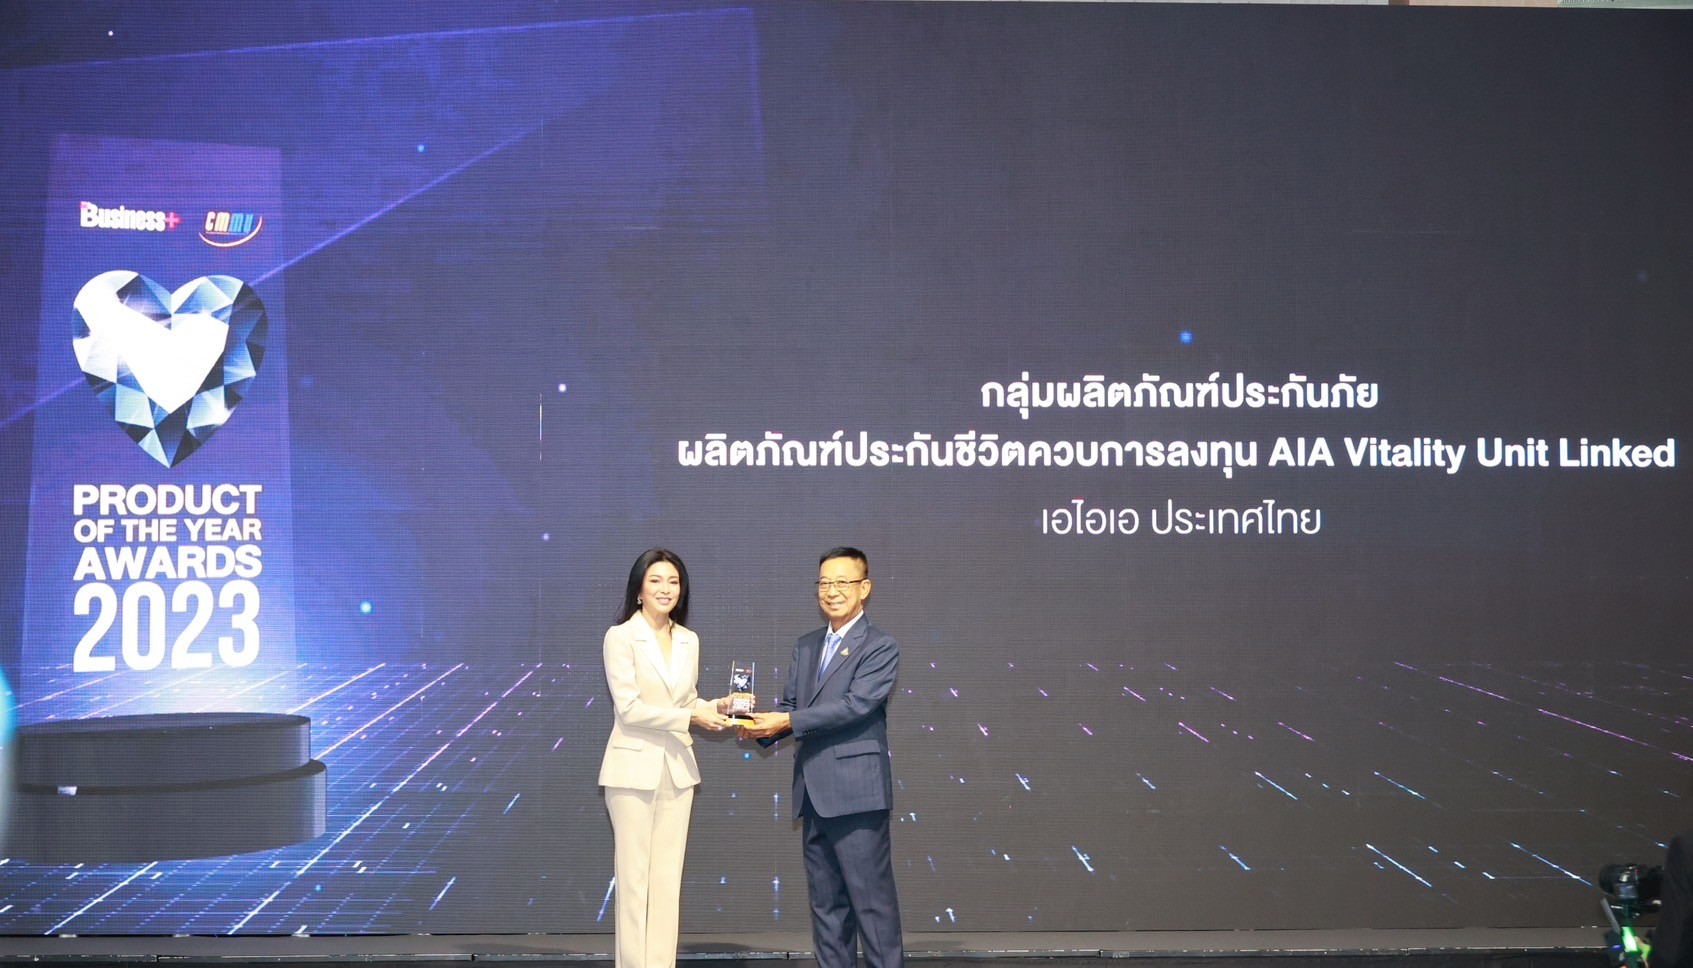 เอไอเอ ประเทศไทย คว้ารางวัล Business+ Product of the Year Awards 2023 จากผลิตภัณฑ์ประกันชีวิต ‘AIA Vitality Unit Linked’ ที่ให้ครบทั้งเรื่องสุขภาพและการลงทุน